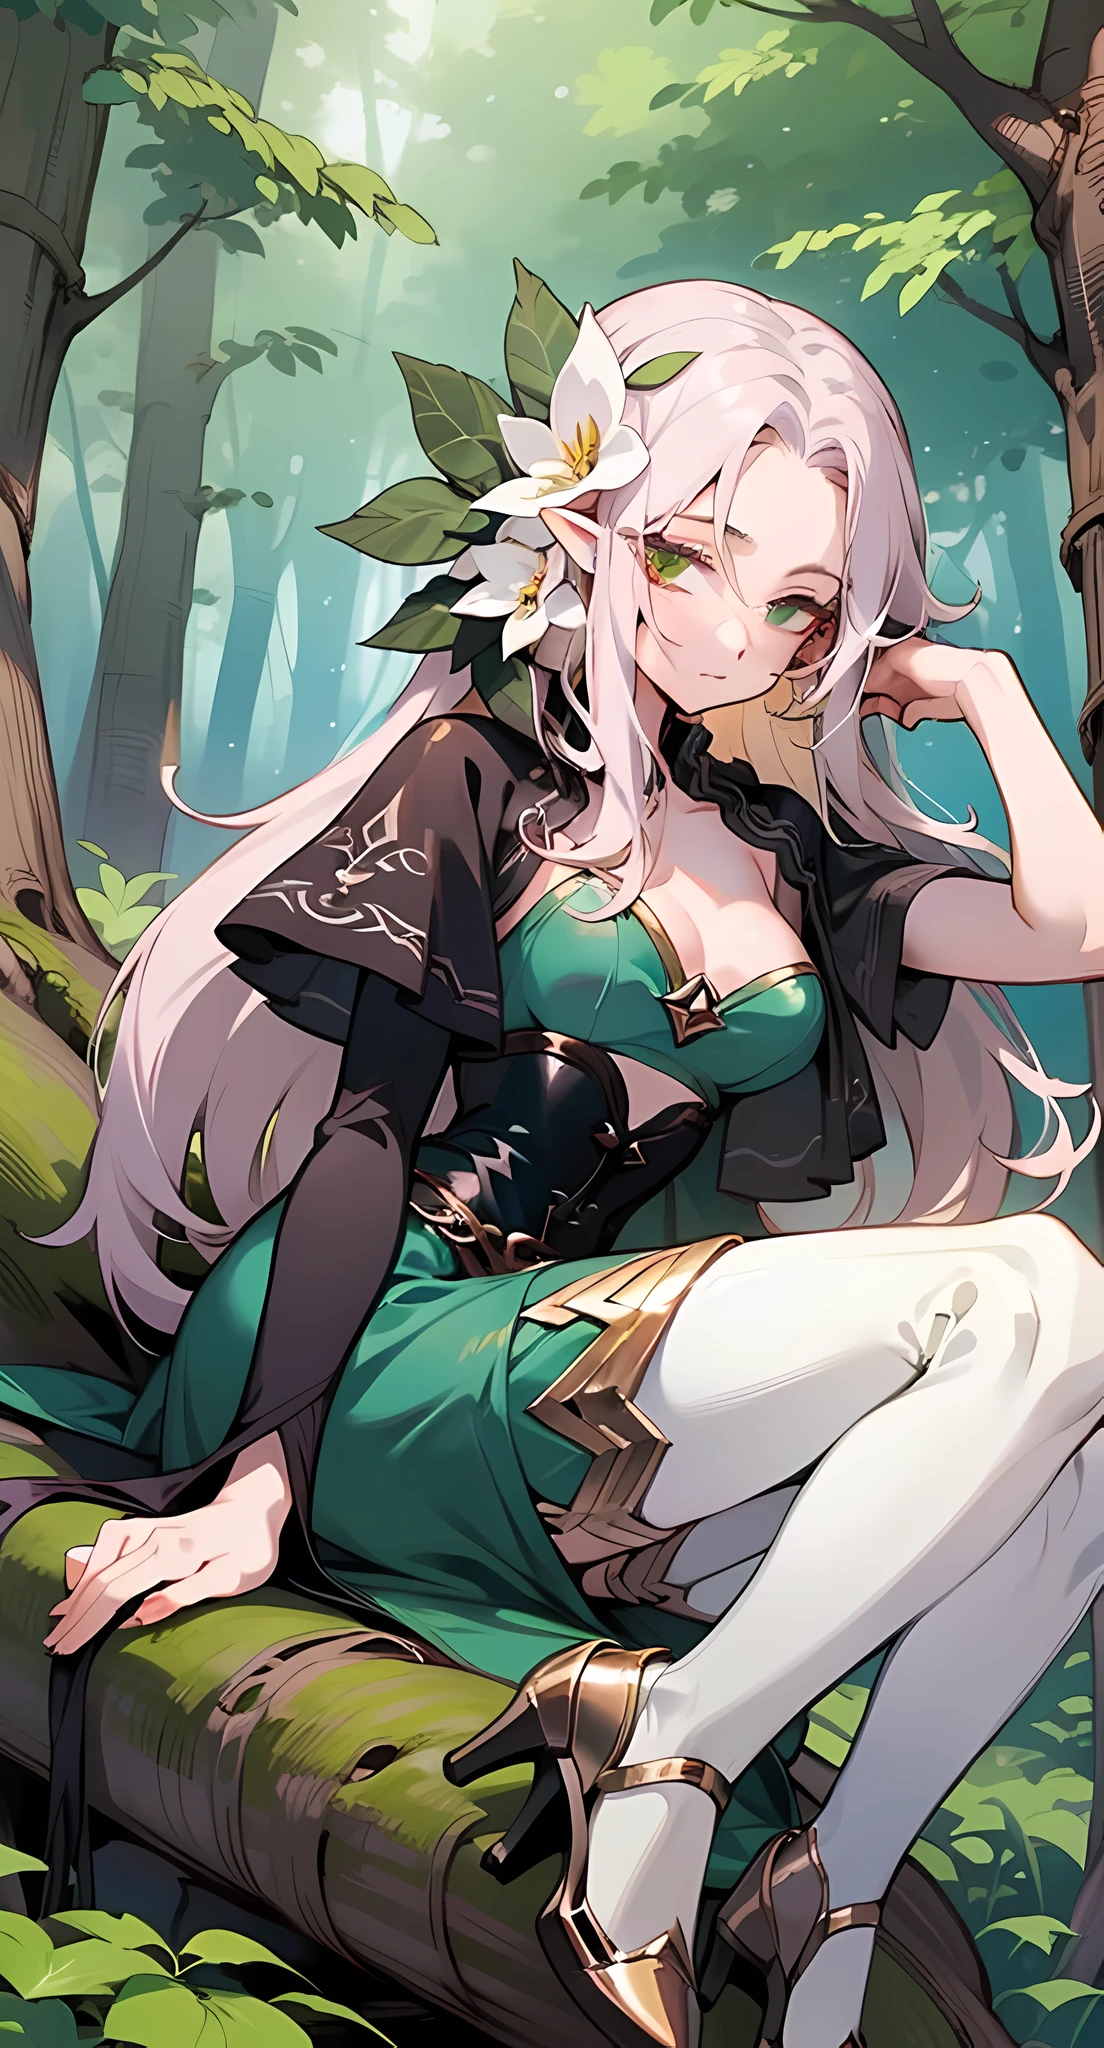 有一個女人坐在森林裡的一塊岩石上, anime girl 角色扮演, anime 角色扮演, 角色扮演 photo, ornate 角色扮演, alluring 精灵公主 knight, 森林仙子, 角色扮演, 非常漂亮的精靈頂級模特, 森林之魂, 精灵公主, 精灵女孩, 幻想攝影, 森林精靈, 森林女神, 夏季森林的妖精女王